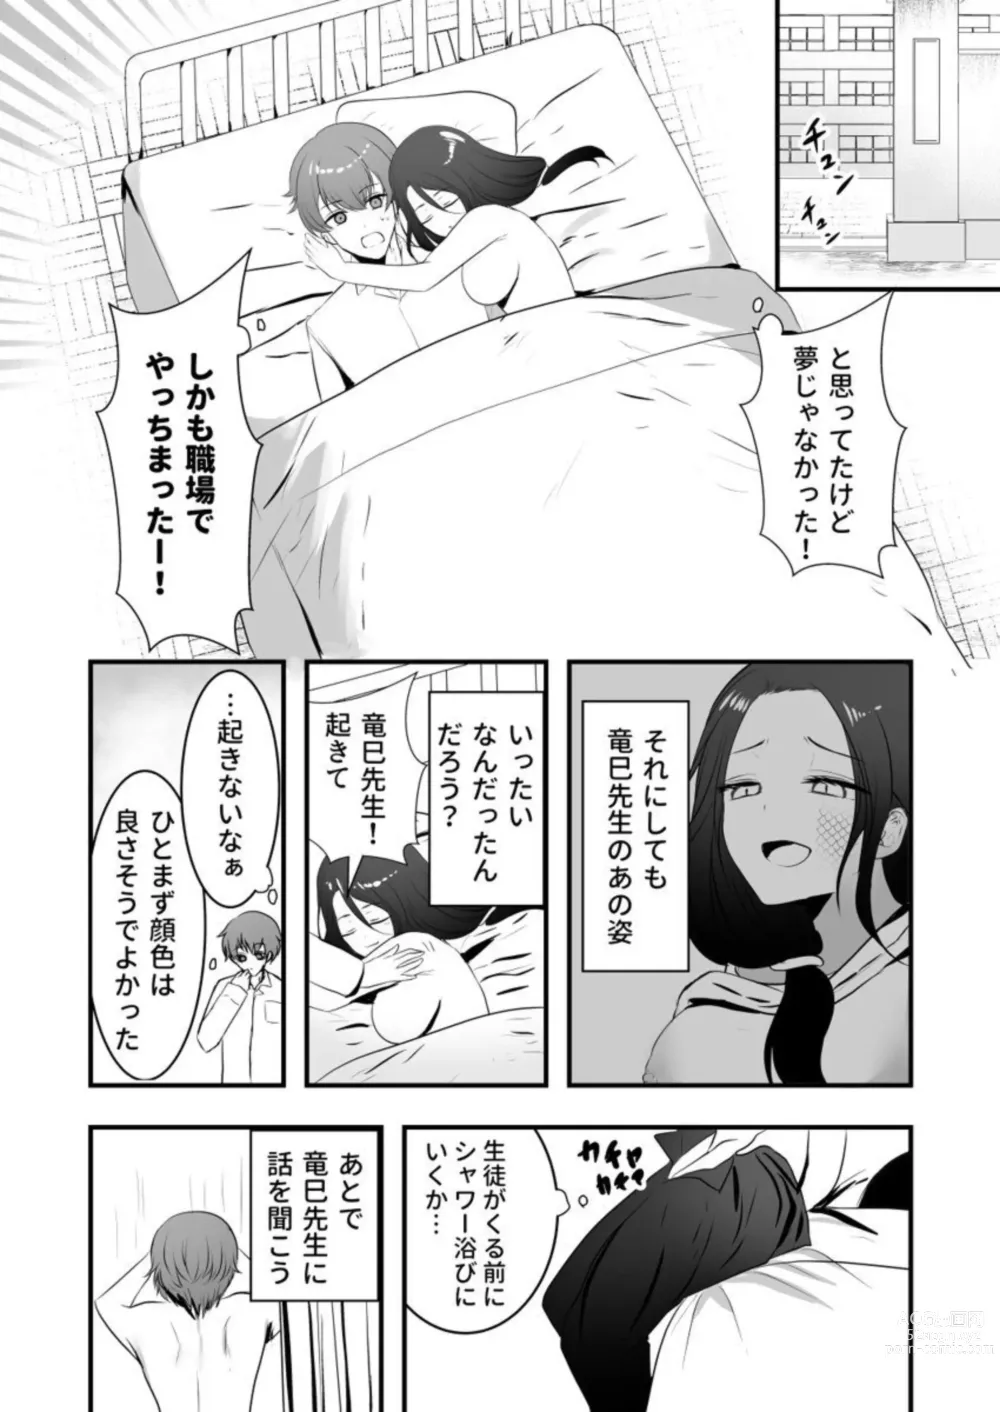 Page 27 of manga Ayakashi Shibori ~ Gokujō no sei wa 胎 No Naka ni 1